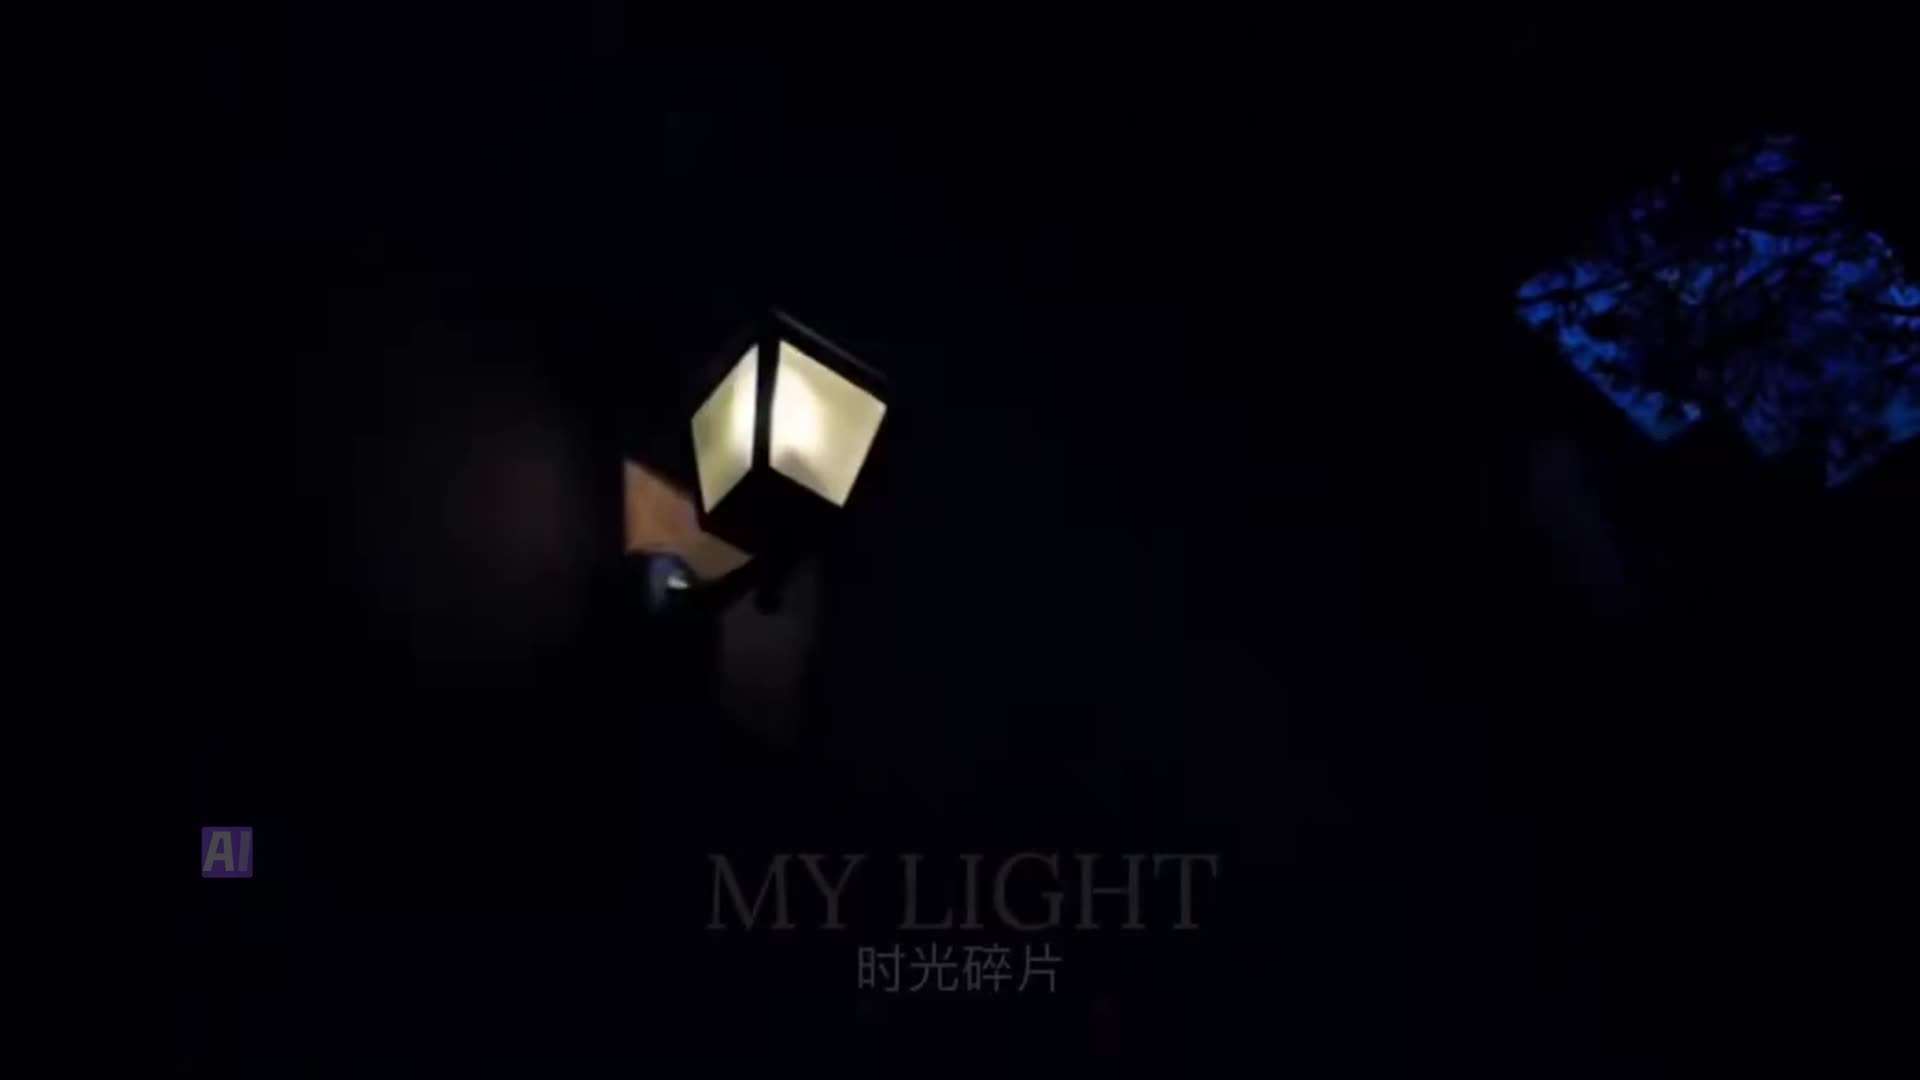 小伙翻出旧照片，用AI工具做成视频《My light》